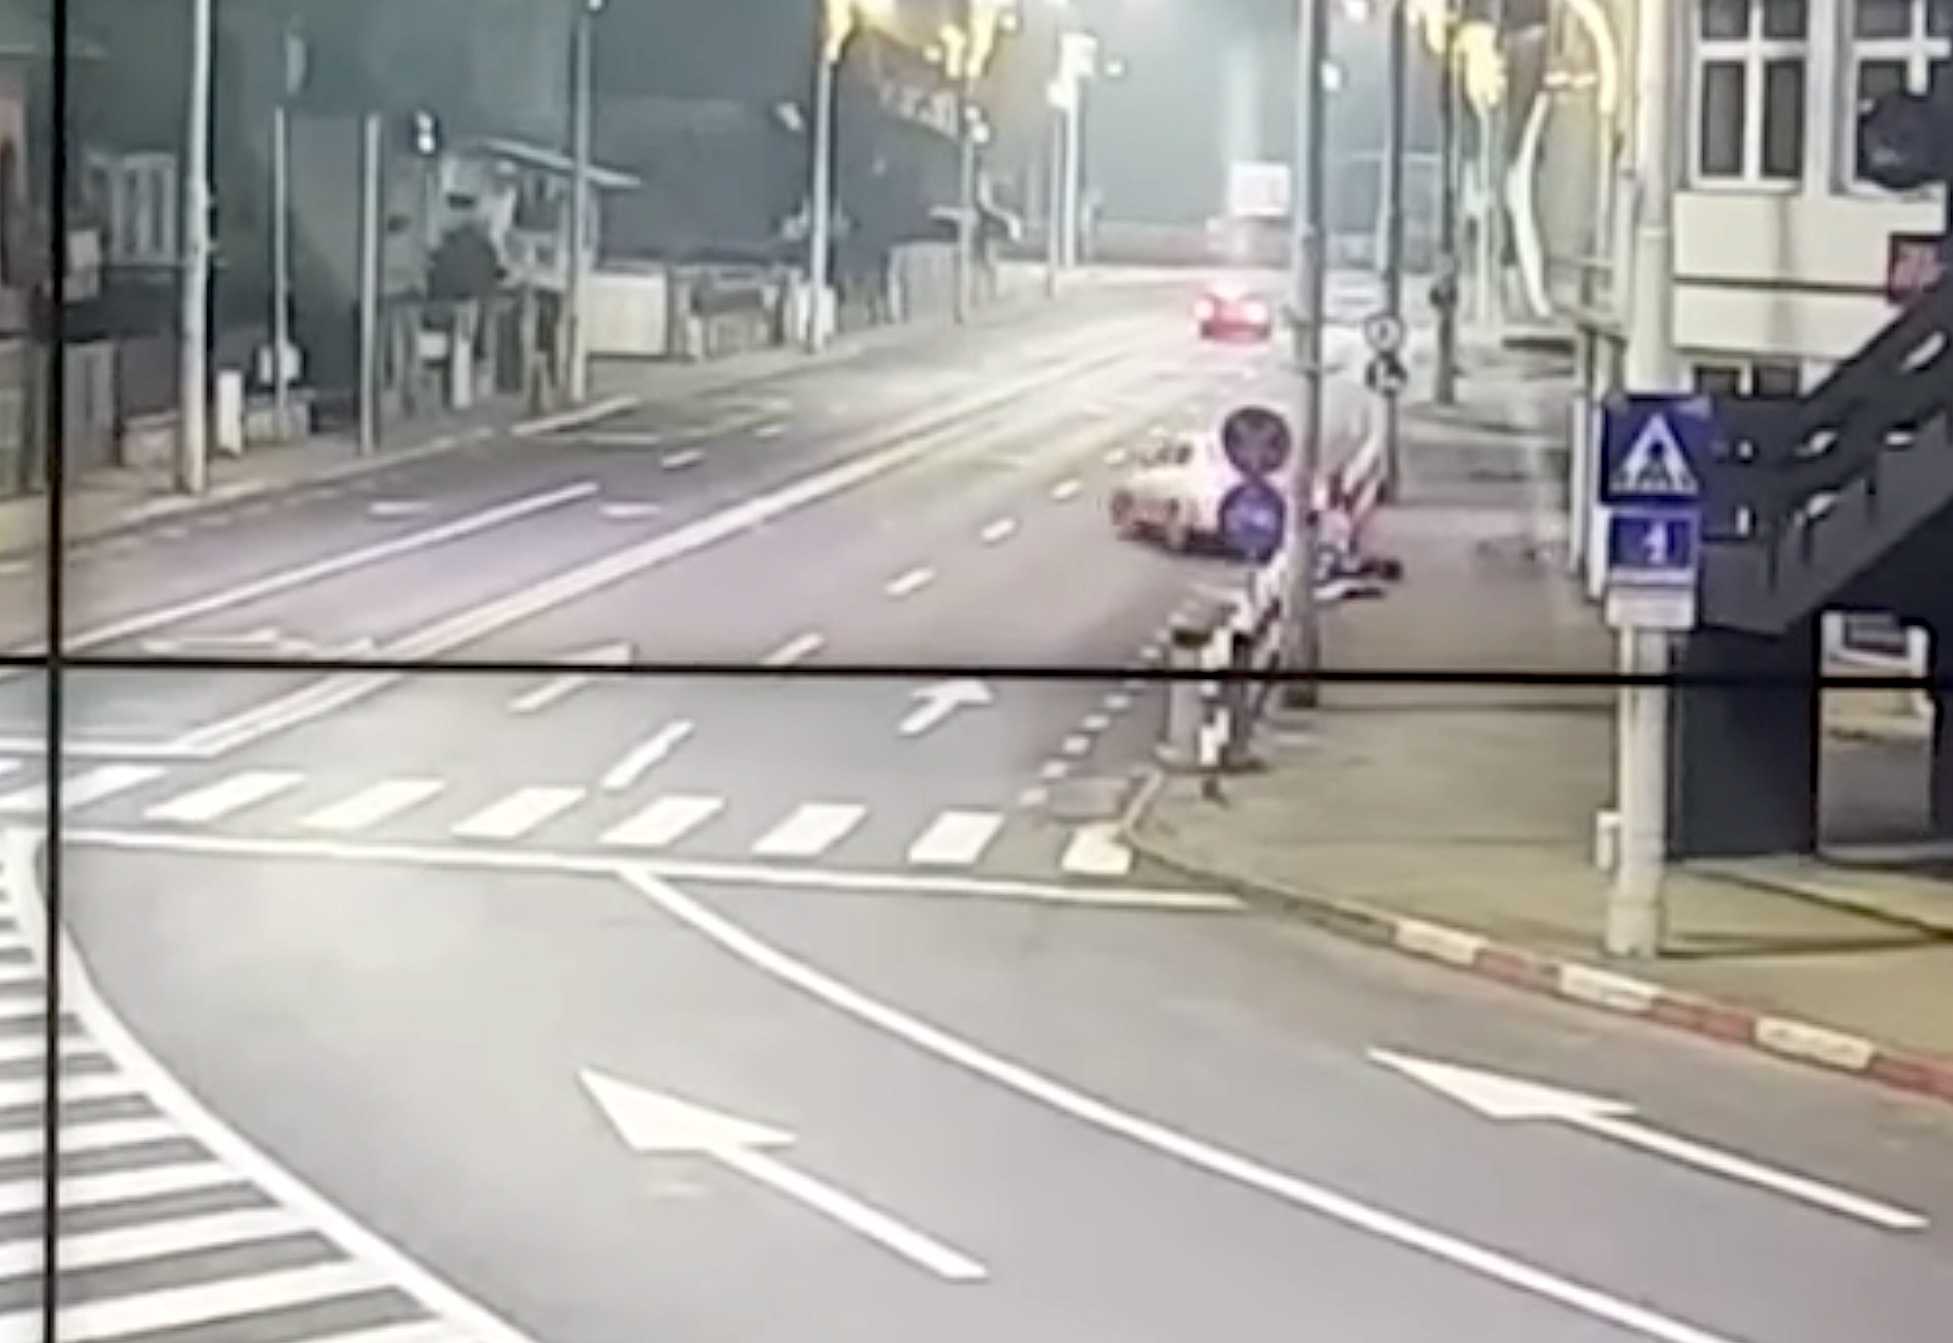 VIDEO Poliția locală a găsit mașina sibianului care a rupt stâlpii de pe marginea drumului și a fugit